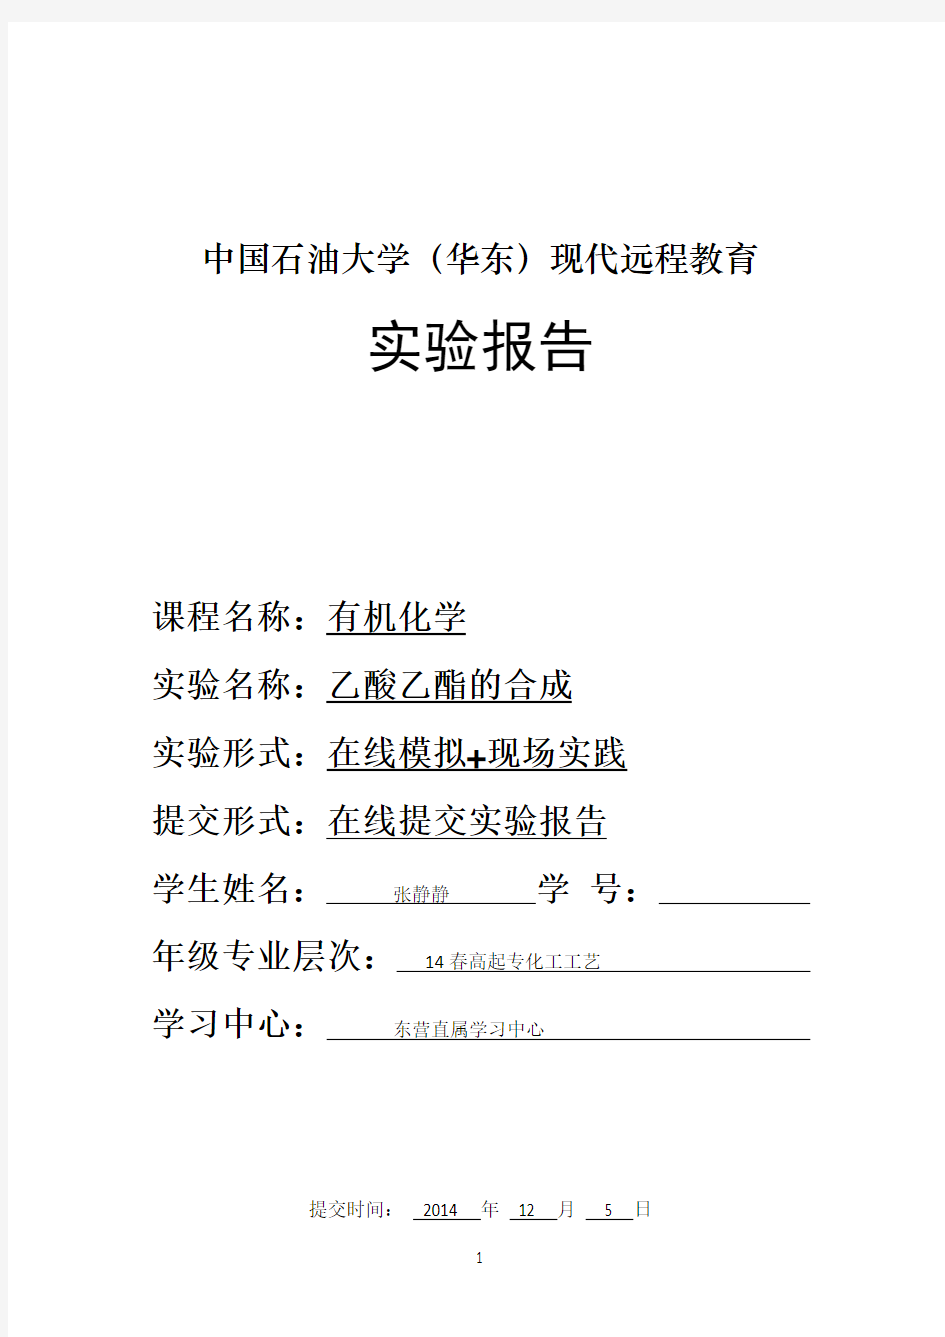 中国石油大学(华东)2014年春乙酸乙酯的合成实验报告